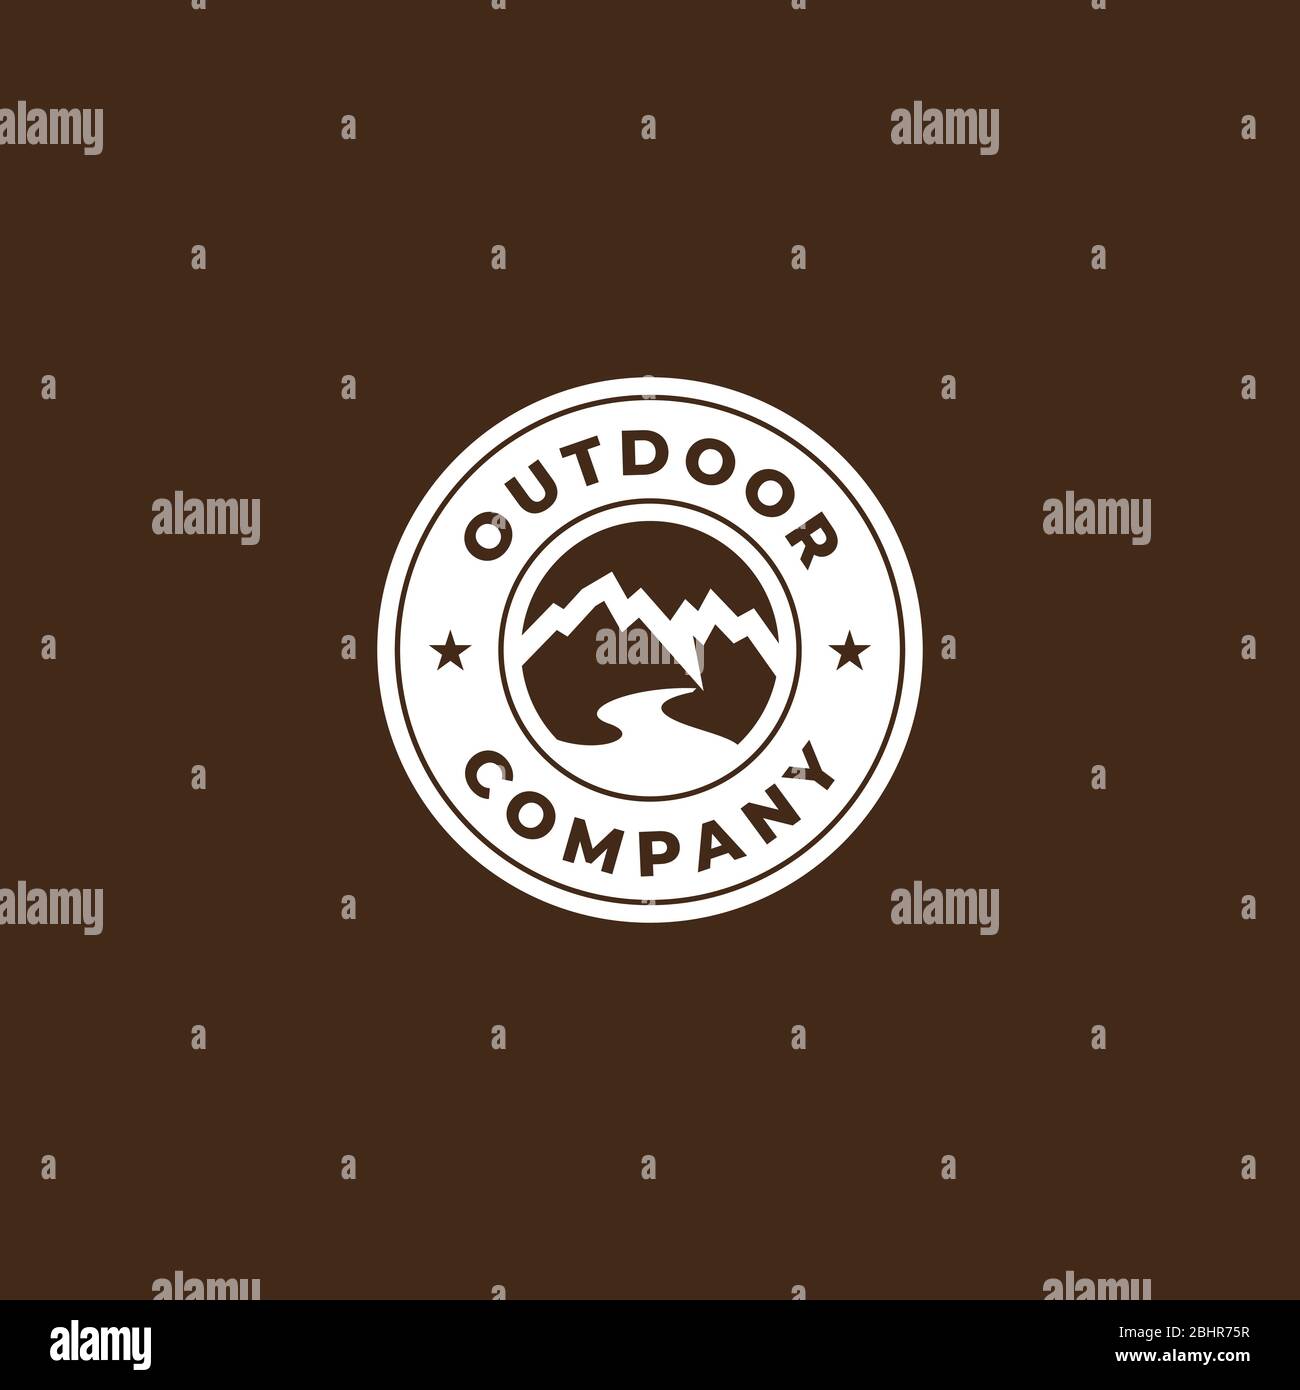 outdoor logo design , simple circle outdoor logo design template Stock Vector